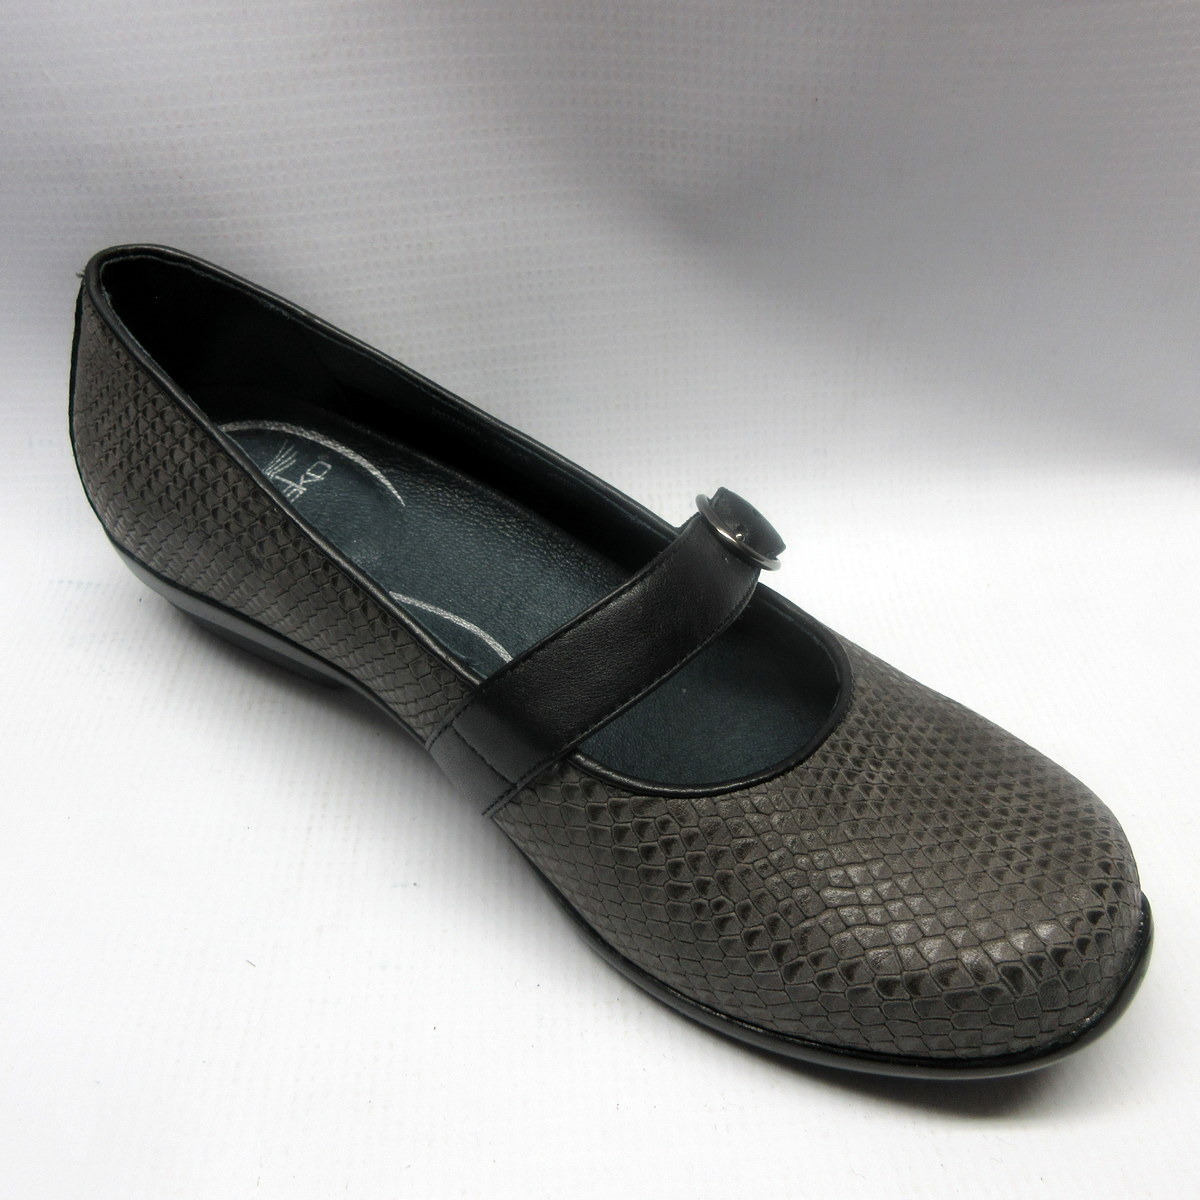 dansko shoes size 39